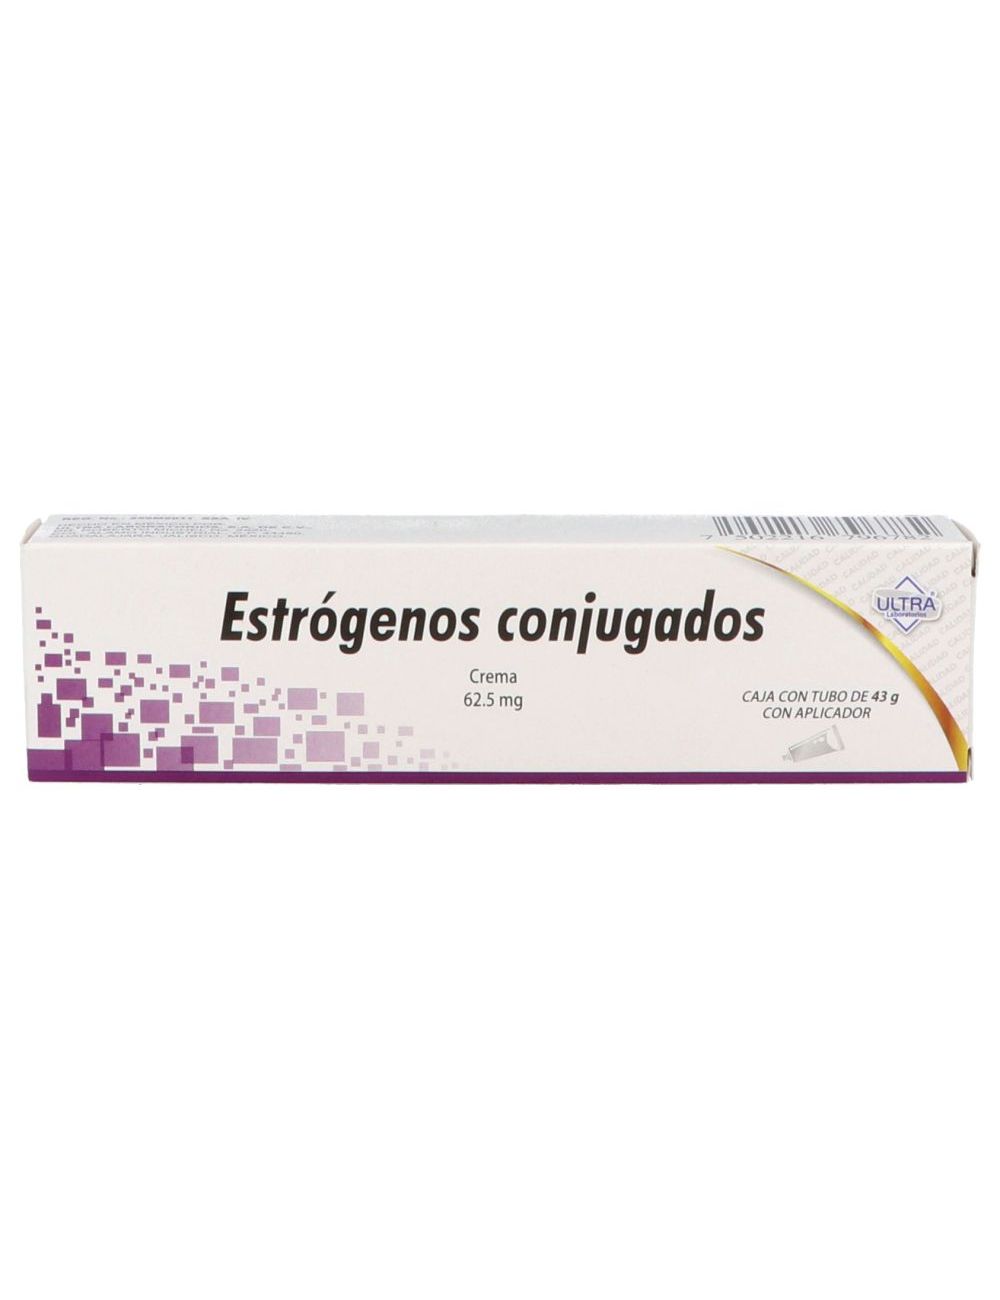 Estrogenos Conjugados 62.5 mg Crema Vaginal Caja Con Tubo Con 43 g